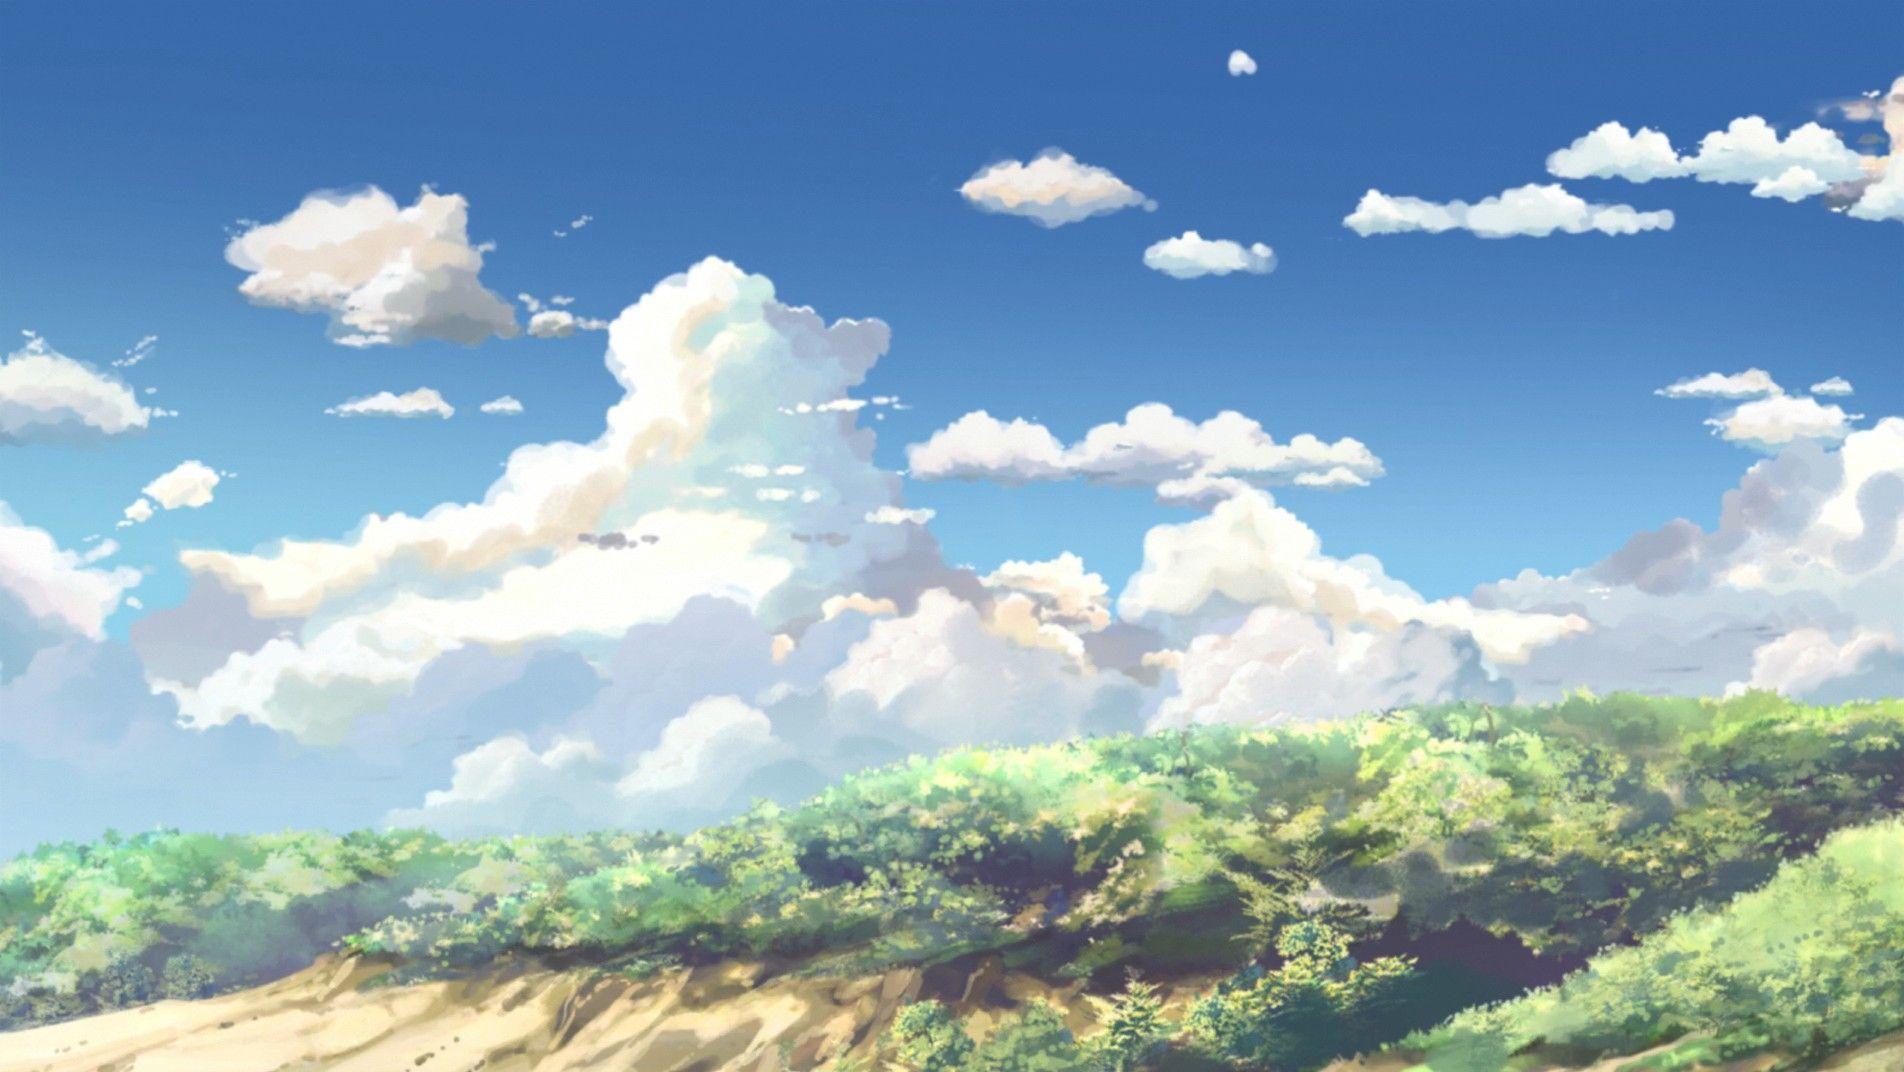 Hình nền anime đám mây: Sử dụng hình nền anime đám mây sẽ mang lại cảm giác mạnh mẽ và đặc biệt cho thiết bị của bạn. Những đám mây tuyệt đẹp và bầu trời xanh ngắt sẽ mang đến trải nghiệm hấp dẫn và đầy thú vị cho bạn khi xem anime.